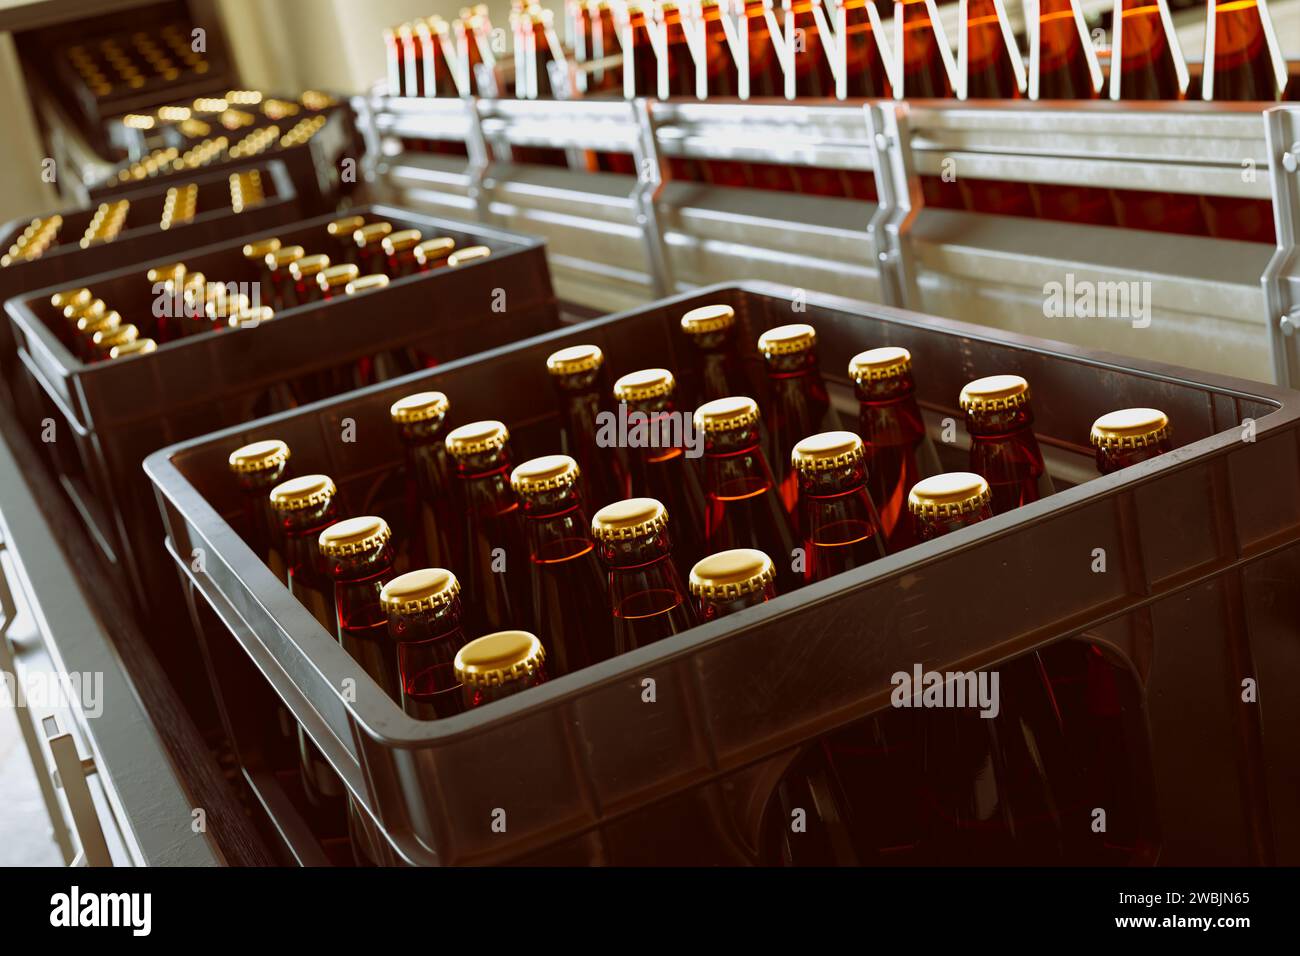 Ansicht einer automatisierten Abfüllanlage mit versiegelten braunen Flaschen, die in Kisten transportiert und verpackt werden, was eine moderne Produktionseffizienz zeigt Stockfoto